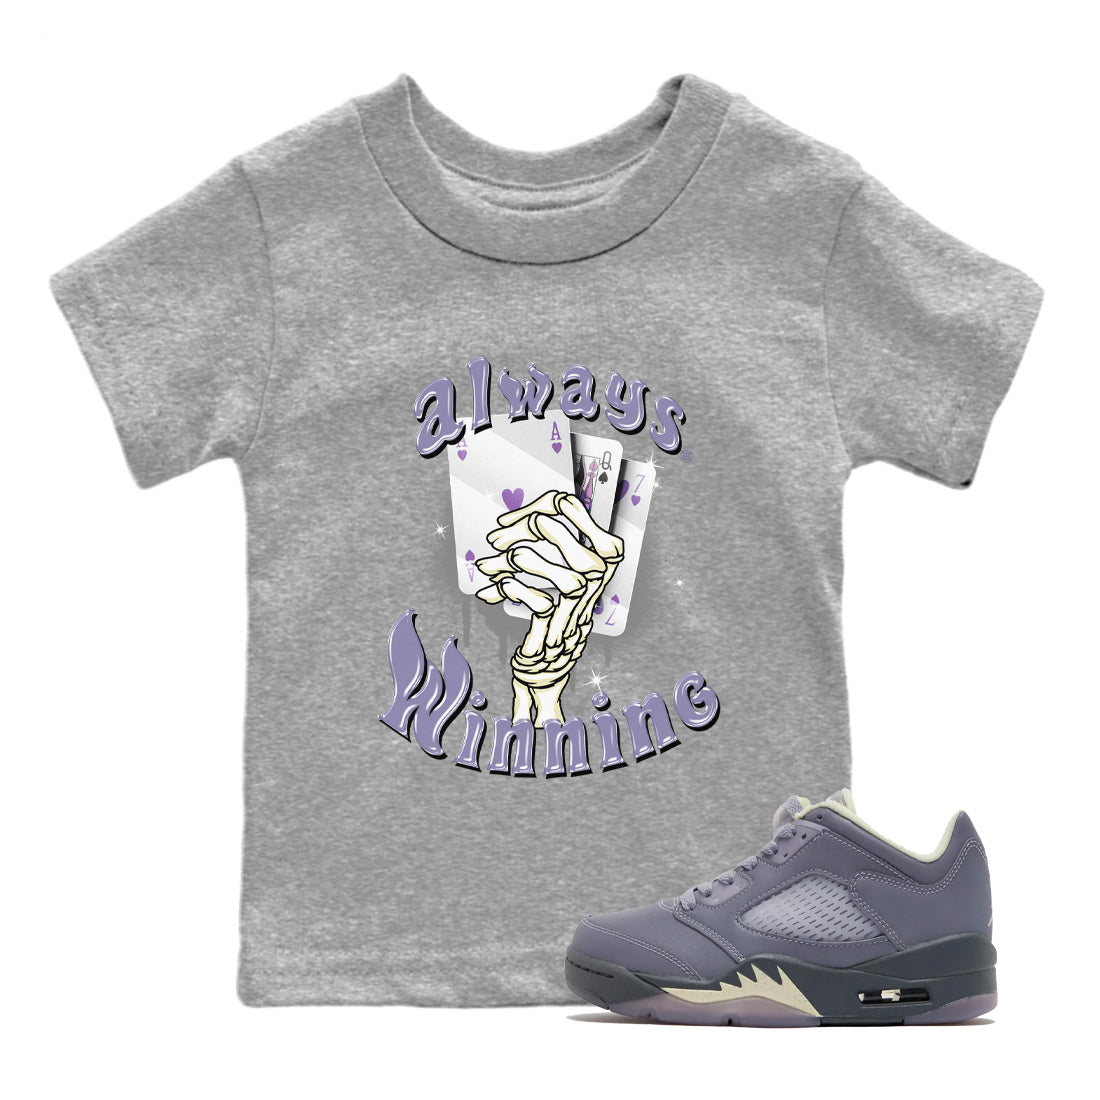 Air Jordan 5 Indigo Haze Sneaker Match Tees Always Winning 5s Indigo Haze Tee Sneaker Release Tees Kids Shirts Heather Grey 1